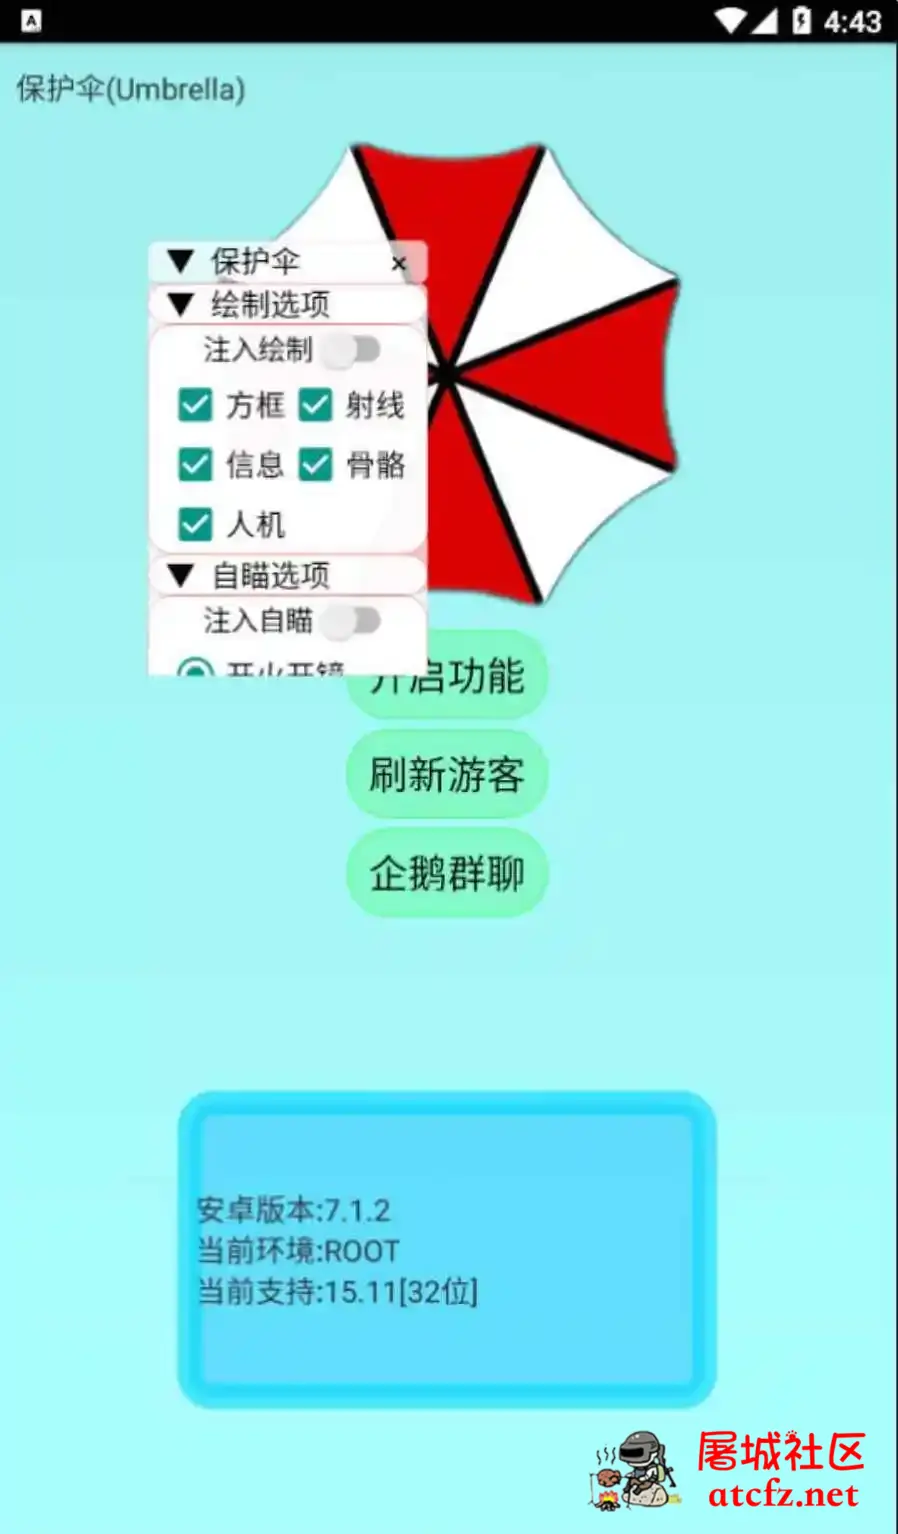 香肠派对保护伞绘制自瞄无后多功能插件 屠城辅助网www.tcfz1.com688